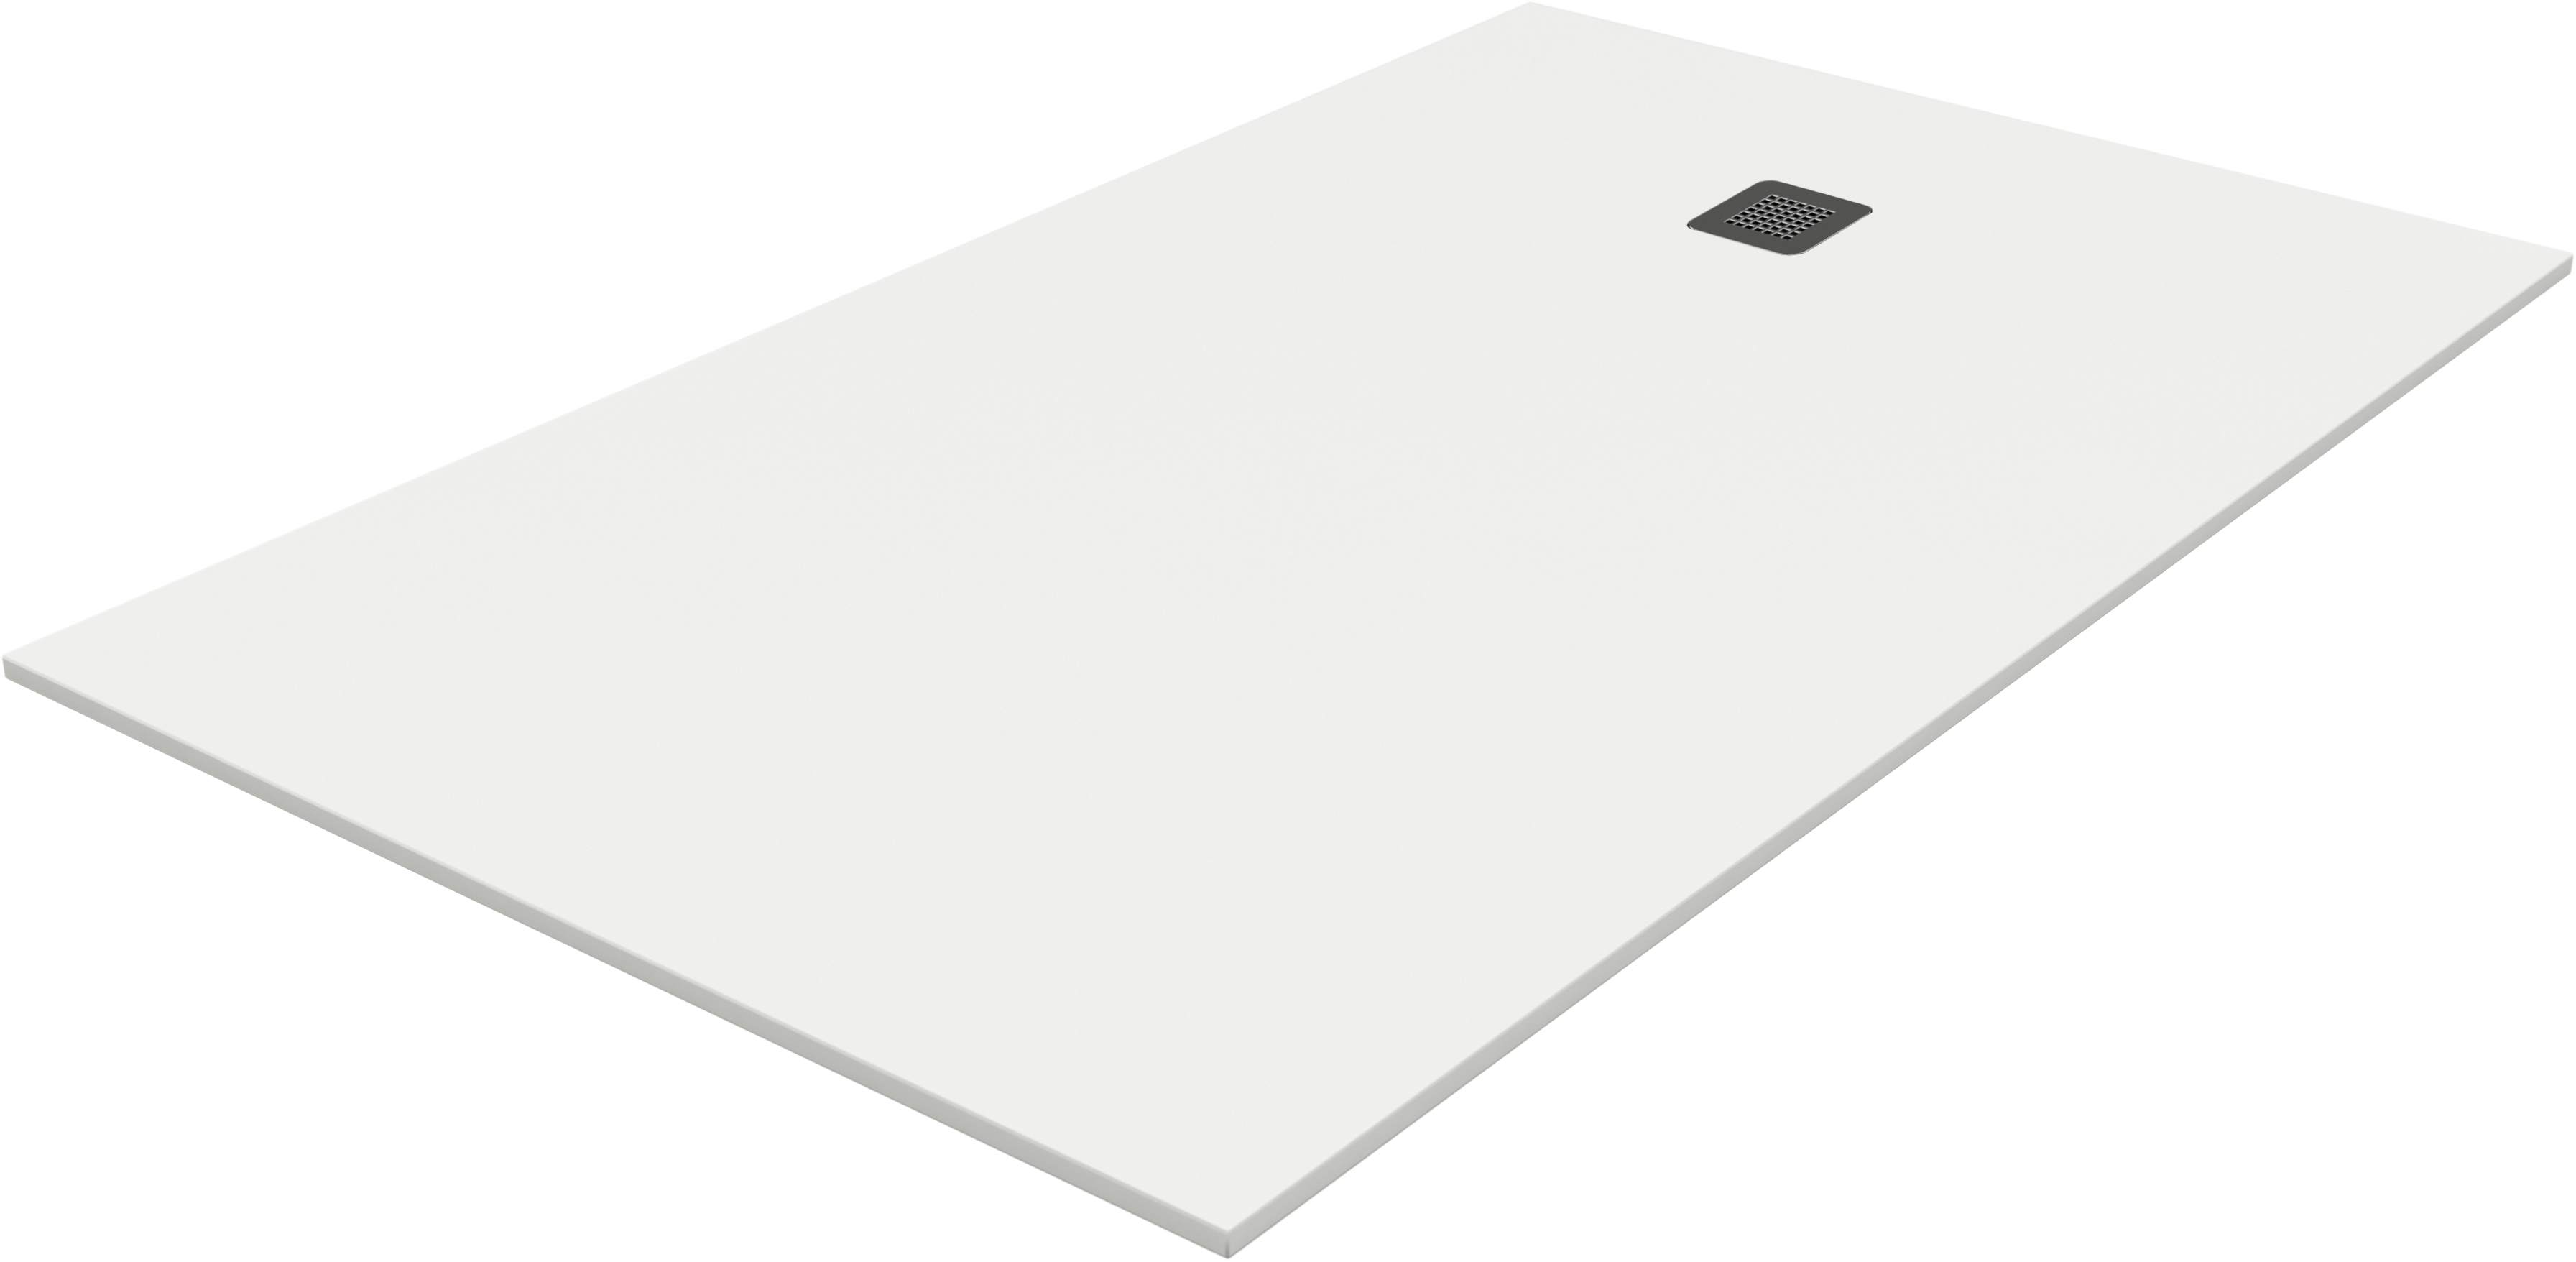 Plato de ducha pietra 140x80 cm blanco